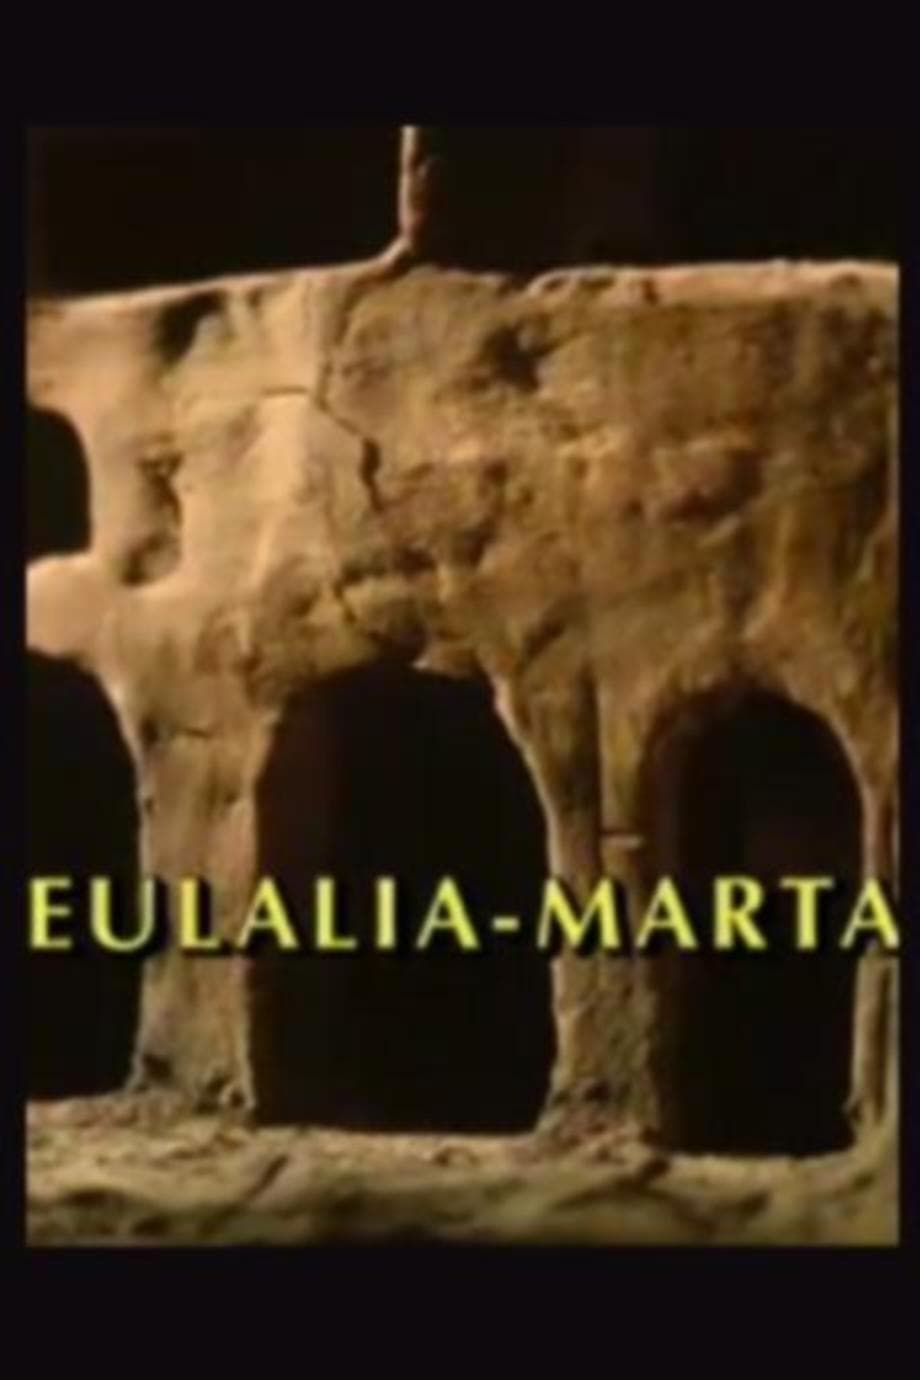 Eulalia-Marta